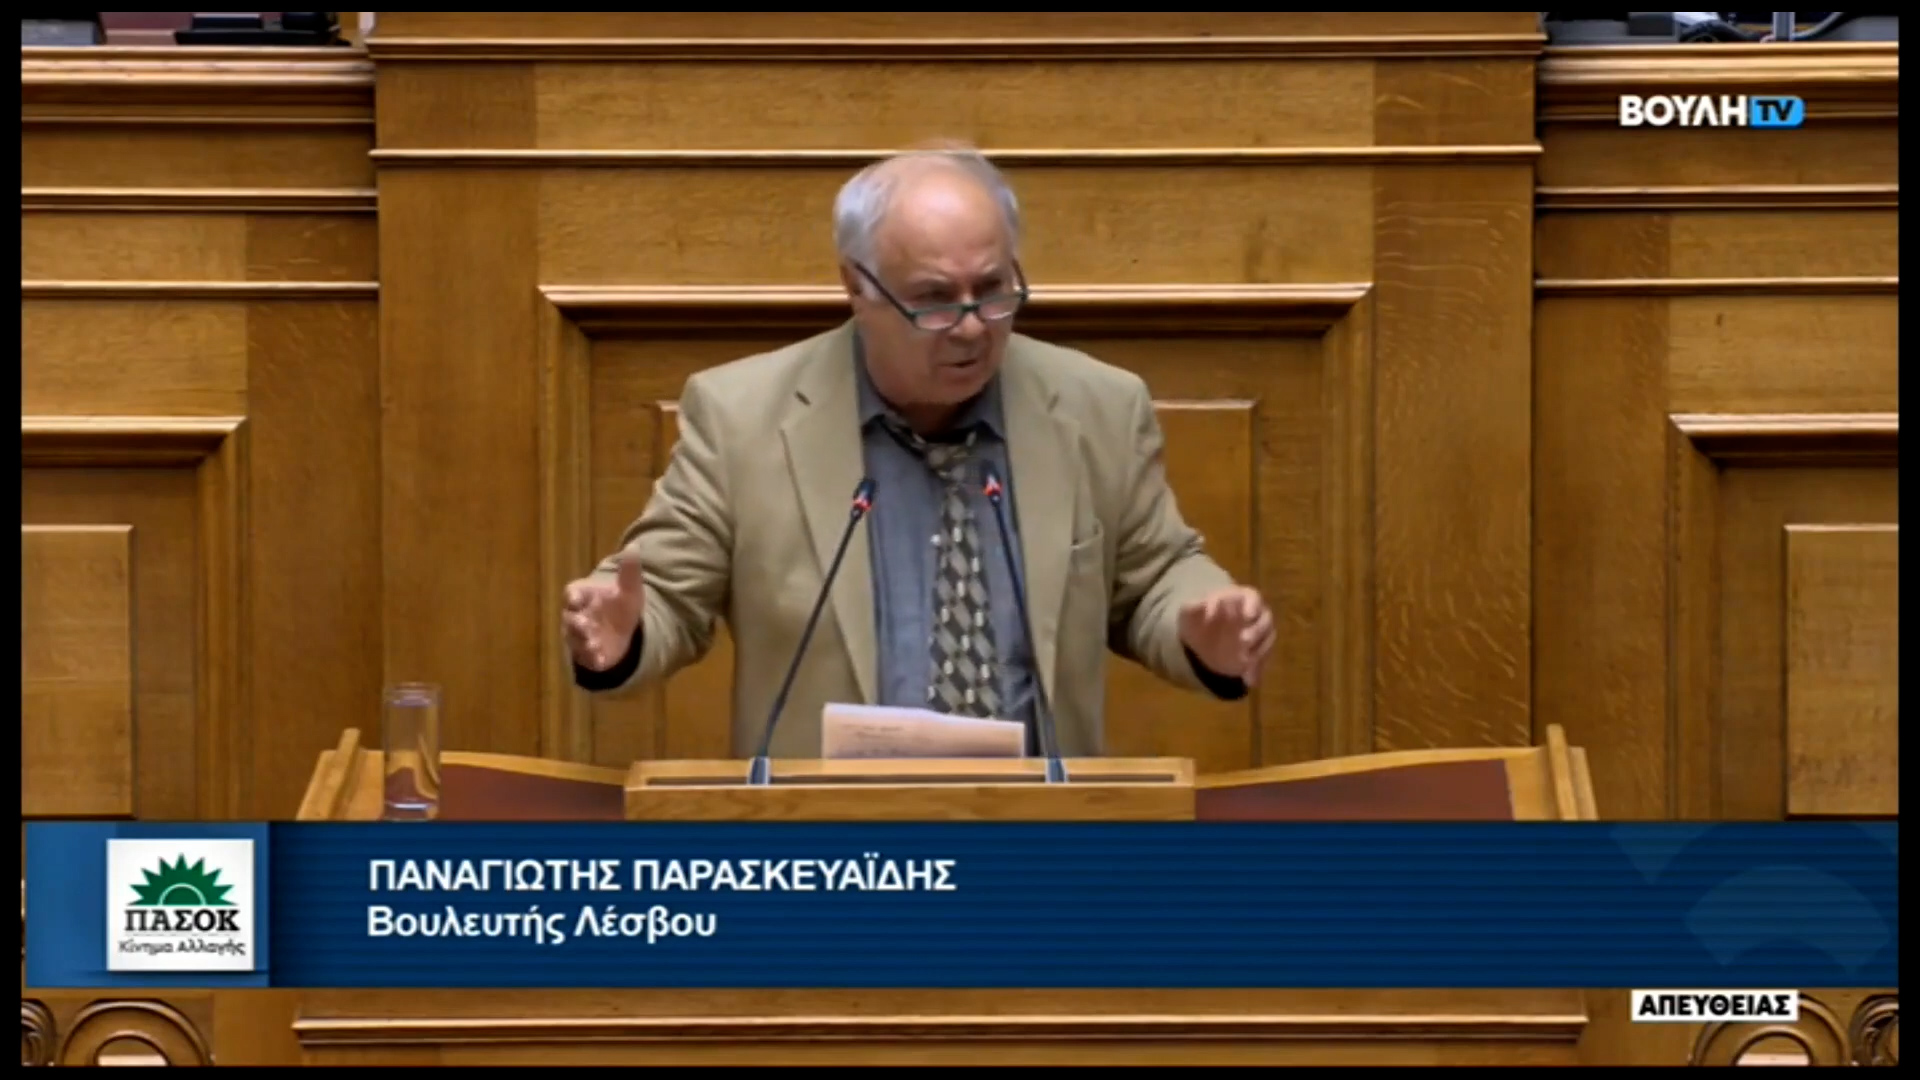 Π. Παρασκευαΐδης : Κατάθεση τροπολογιών για τη στρατιωτική θητεία